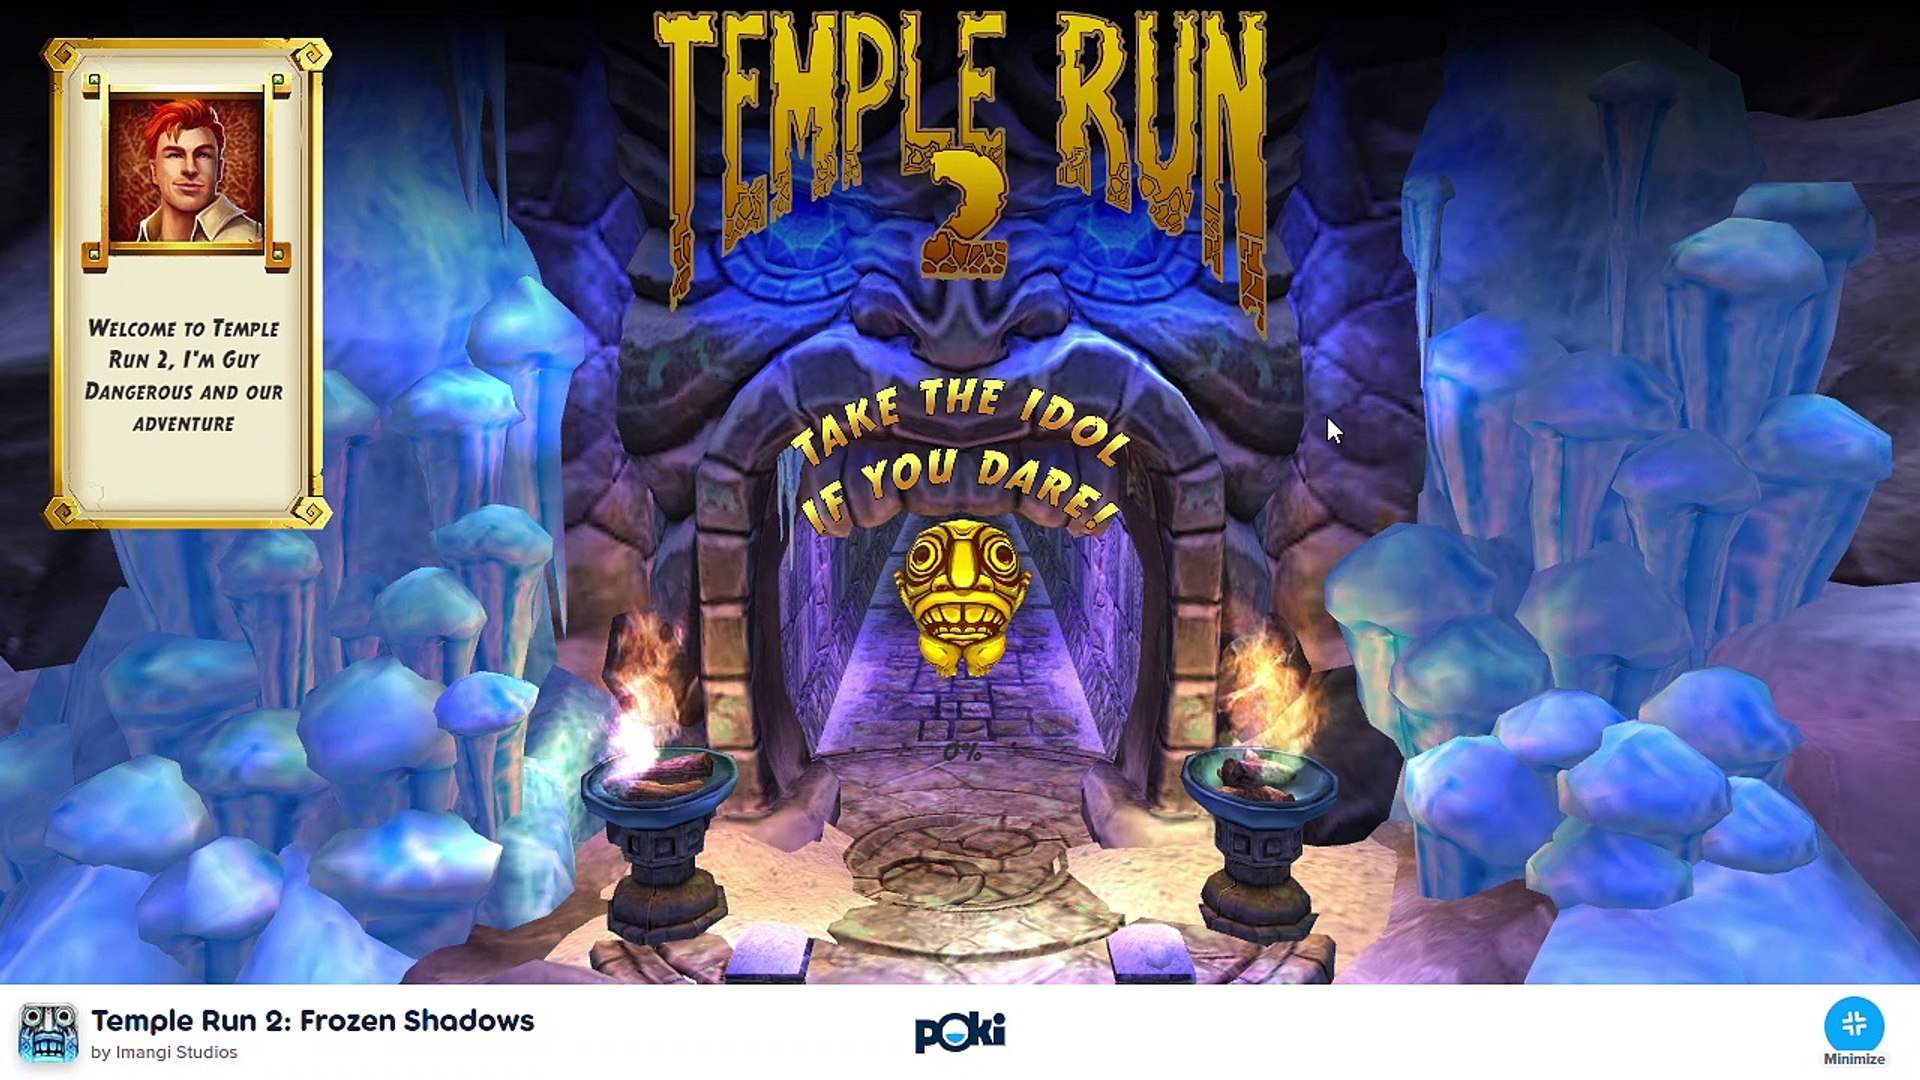 Play Temple Run 2 on Poki 